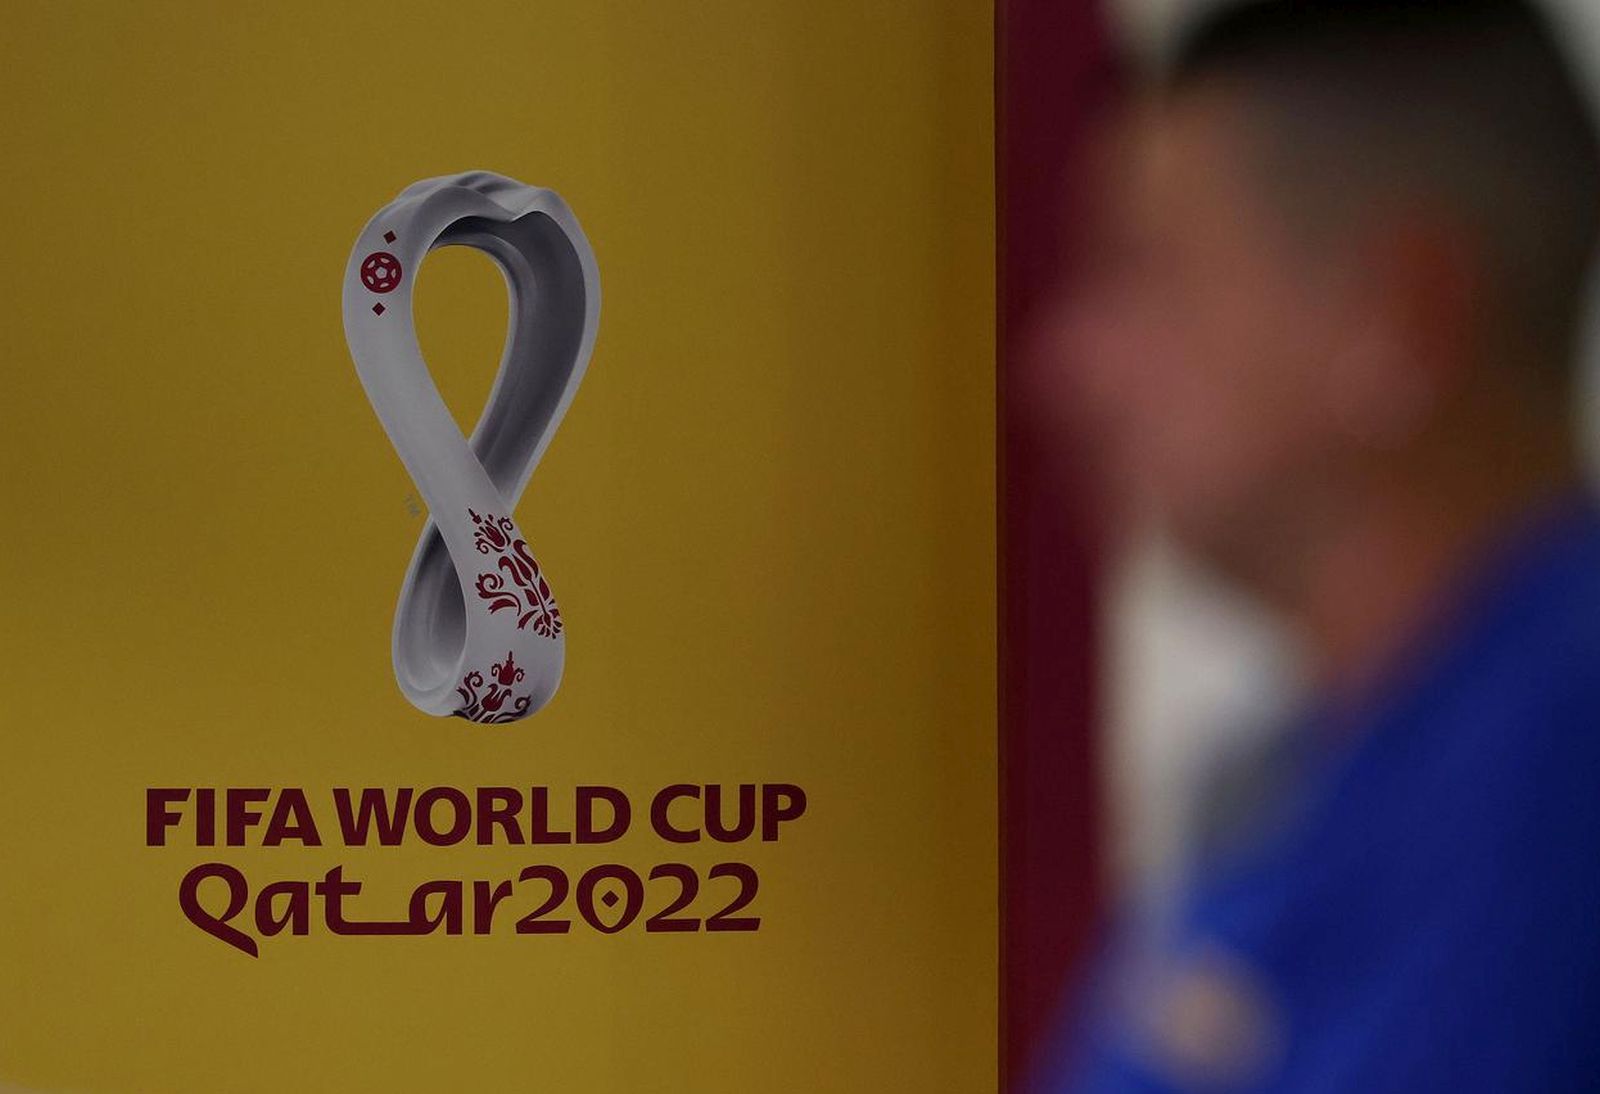 17.11.2022., Doha, Katar - Pogled na Doha media centar koji je namijenjen radu medija uoci pocetka Svjetskog nogometnog prvenstva koje pocinje 22. studenog 2022. godine.  Photo: Igor Kralj/PIXSELL